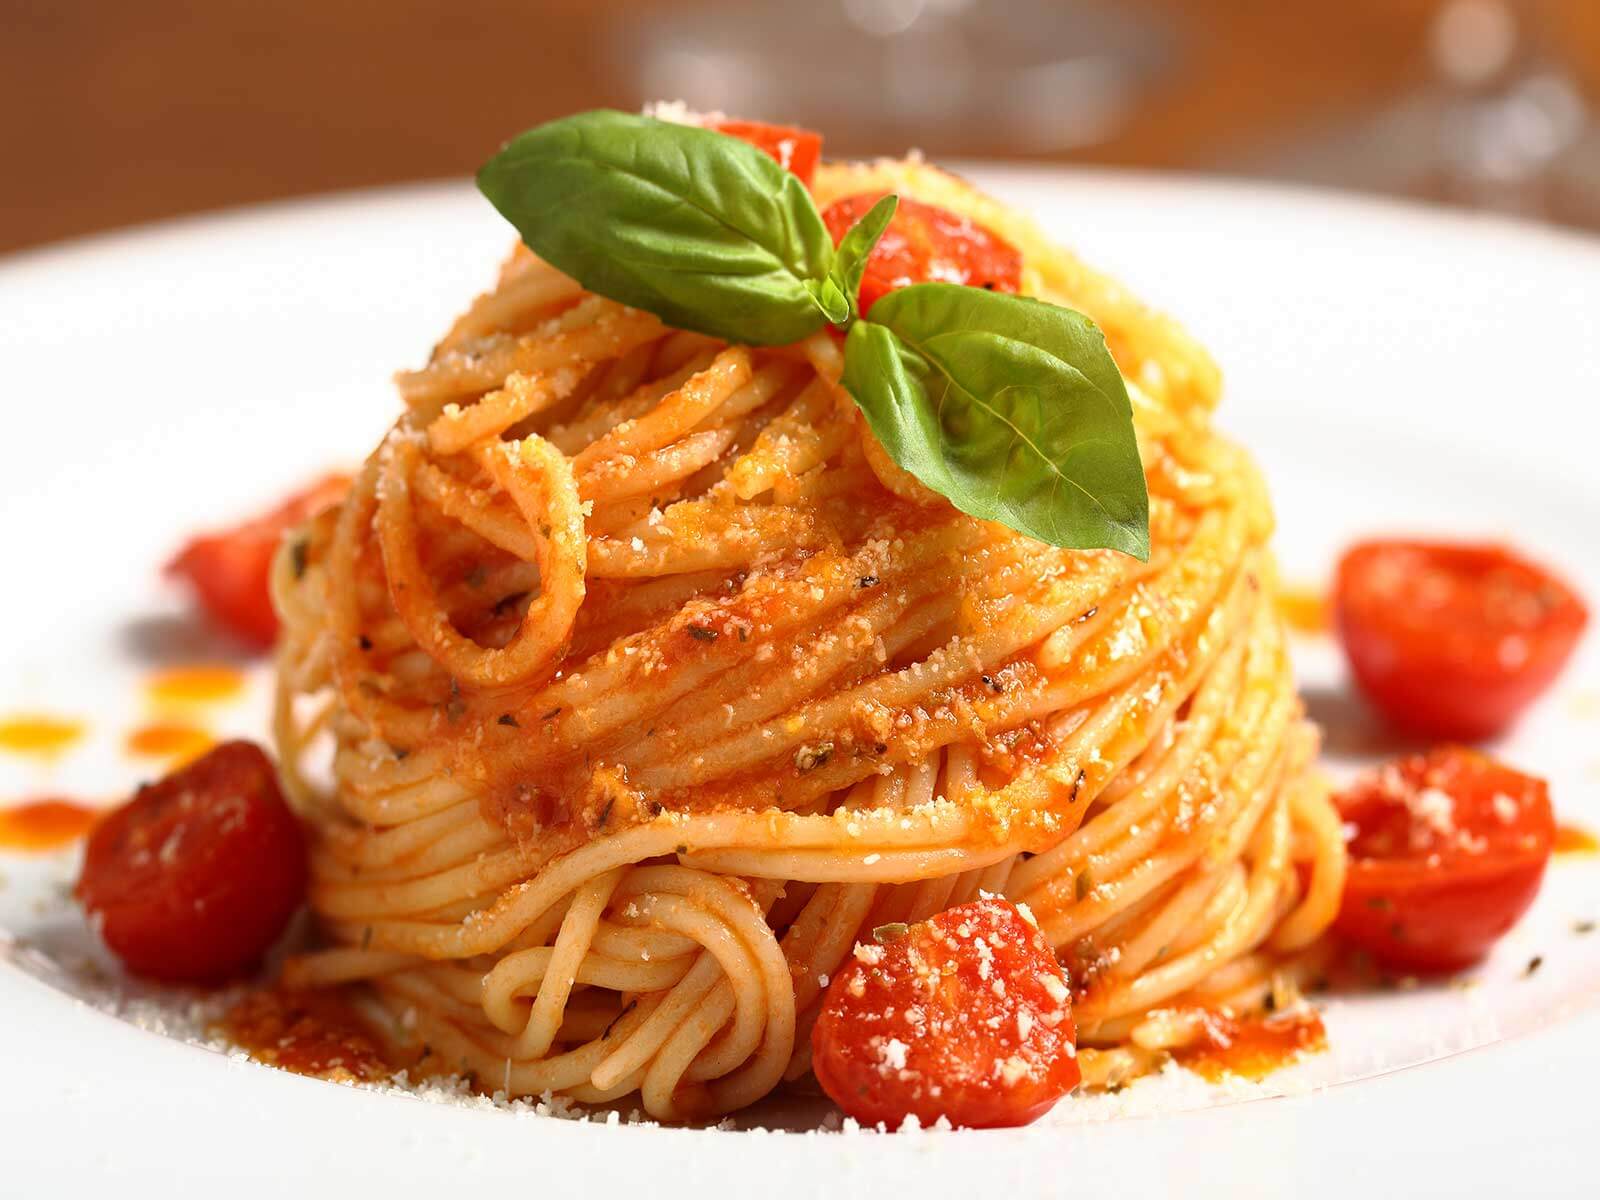 Nudelrezept von Tress mit Spaghetti, Knoblauch und Tomatensoße